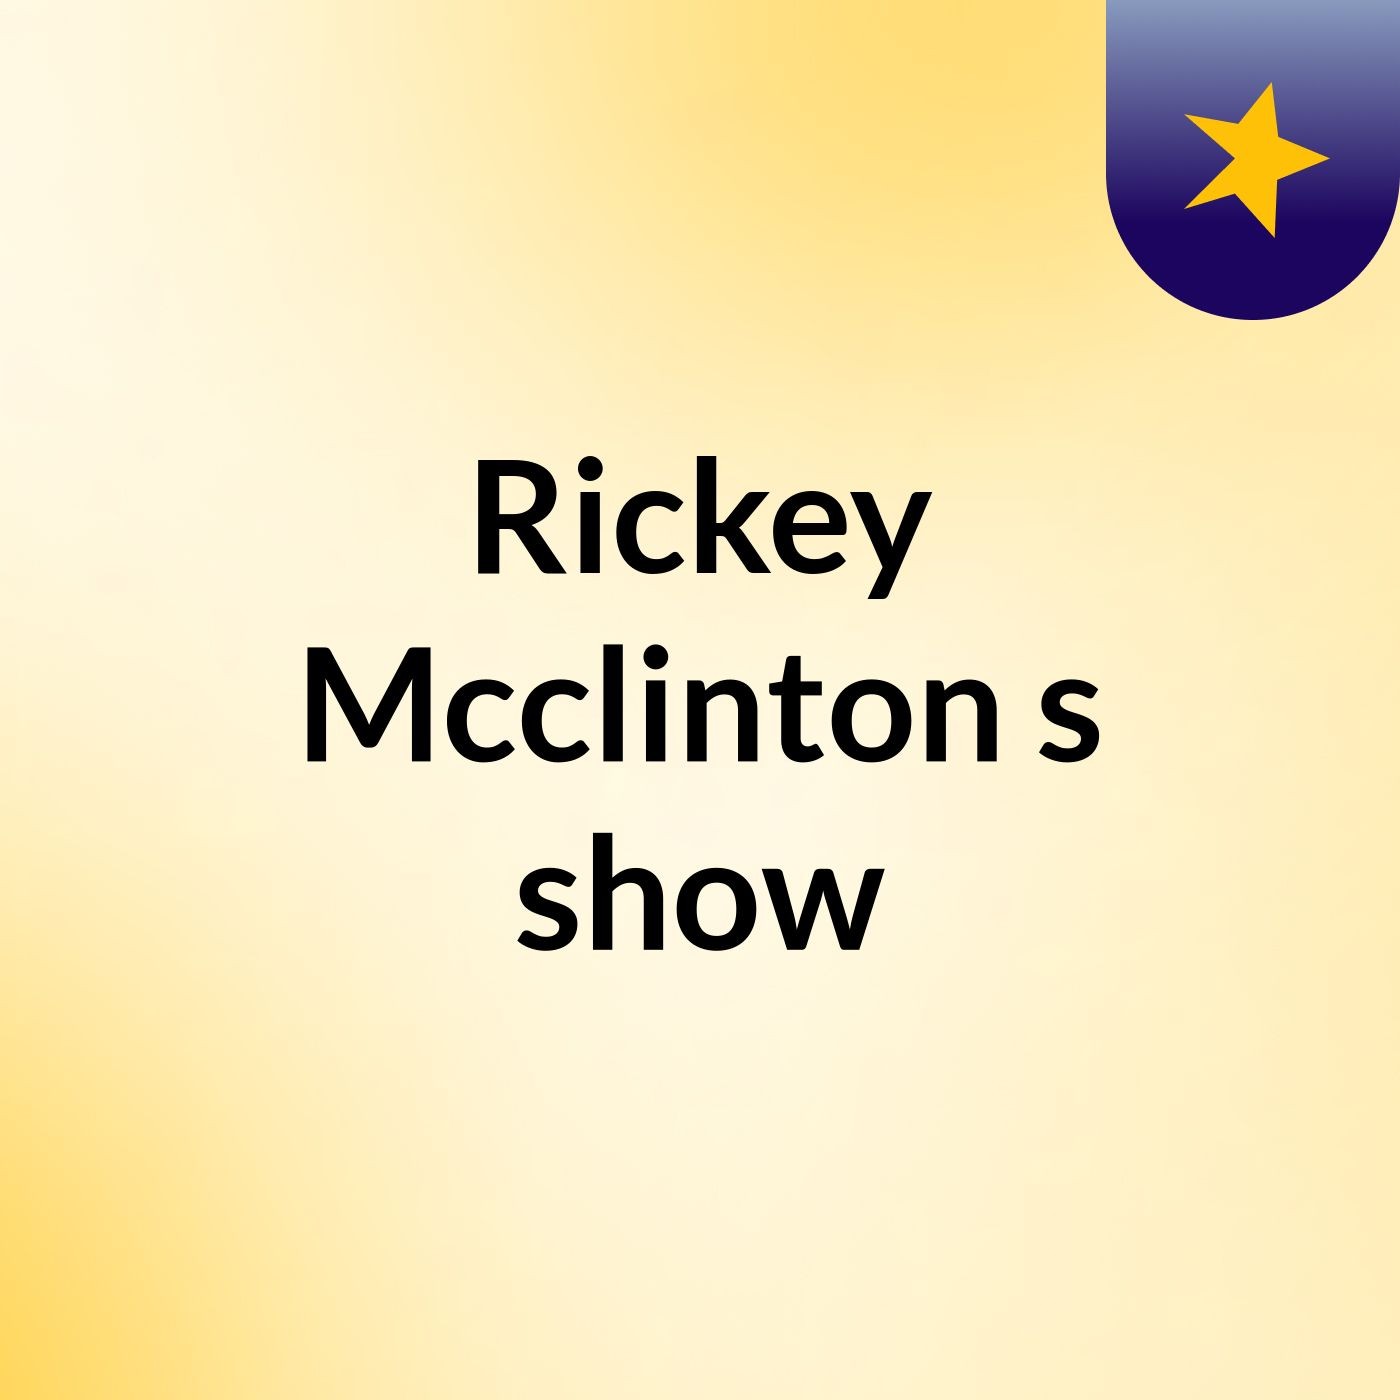 Rickey Mcclinton's show